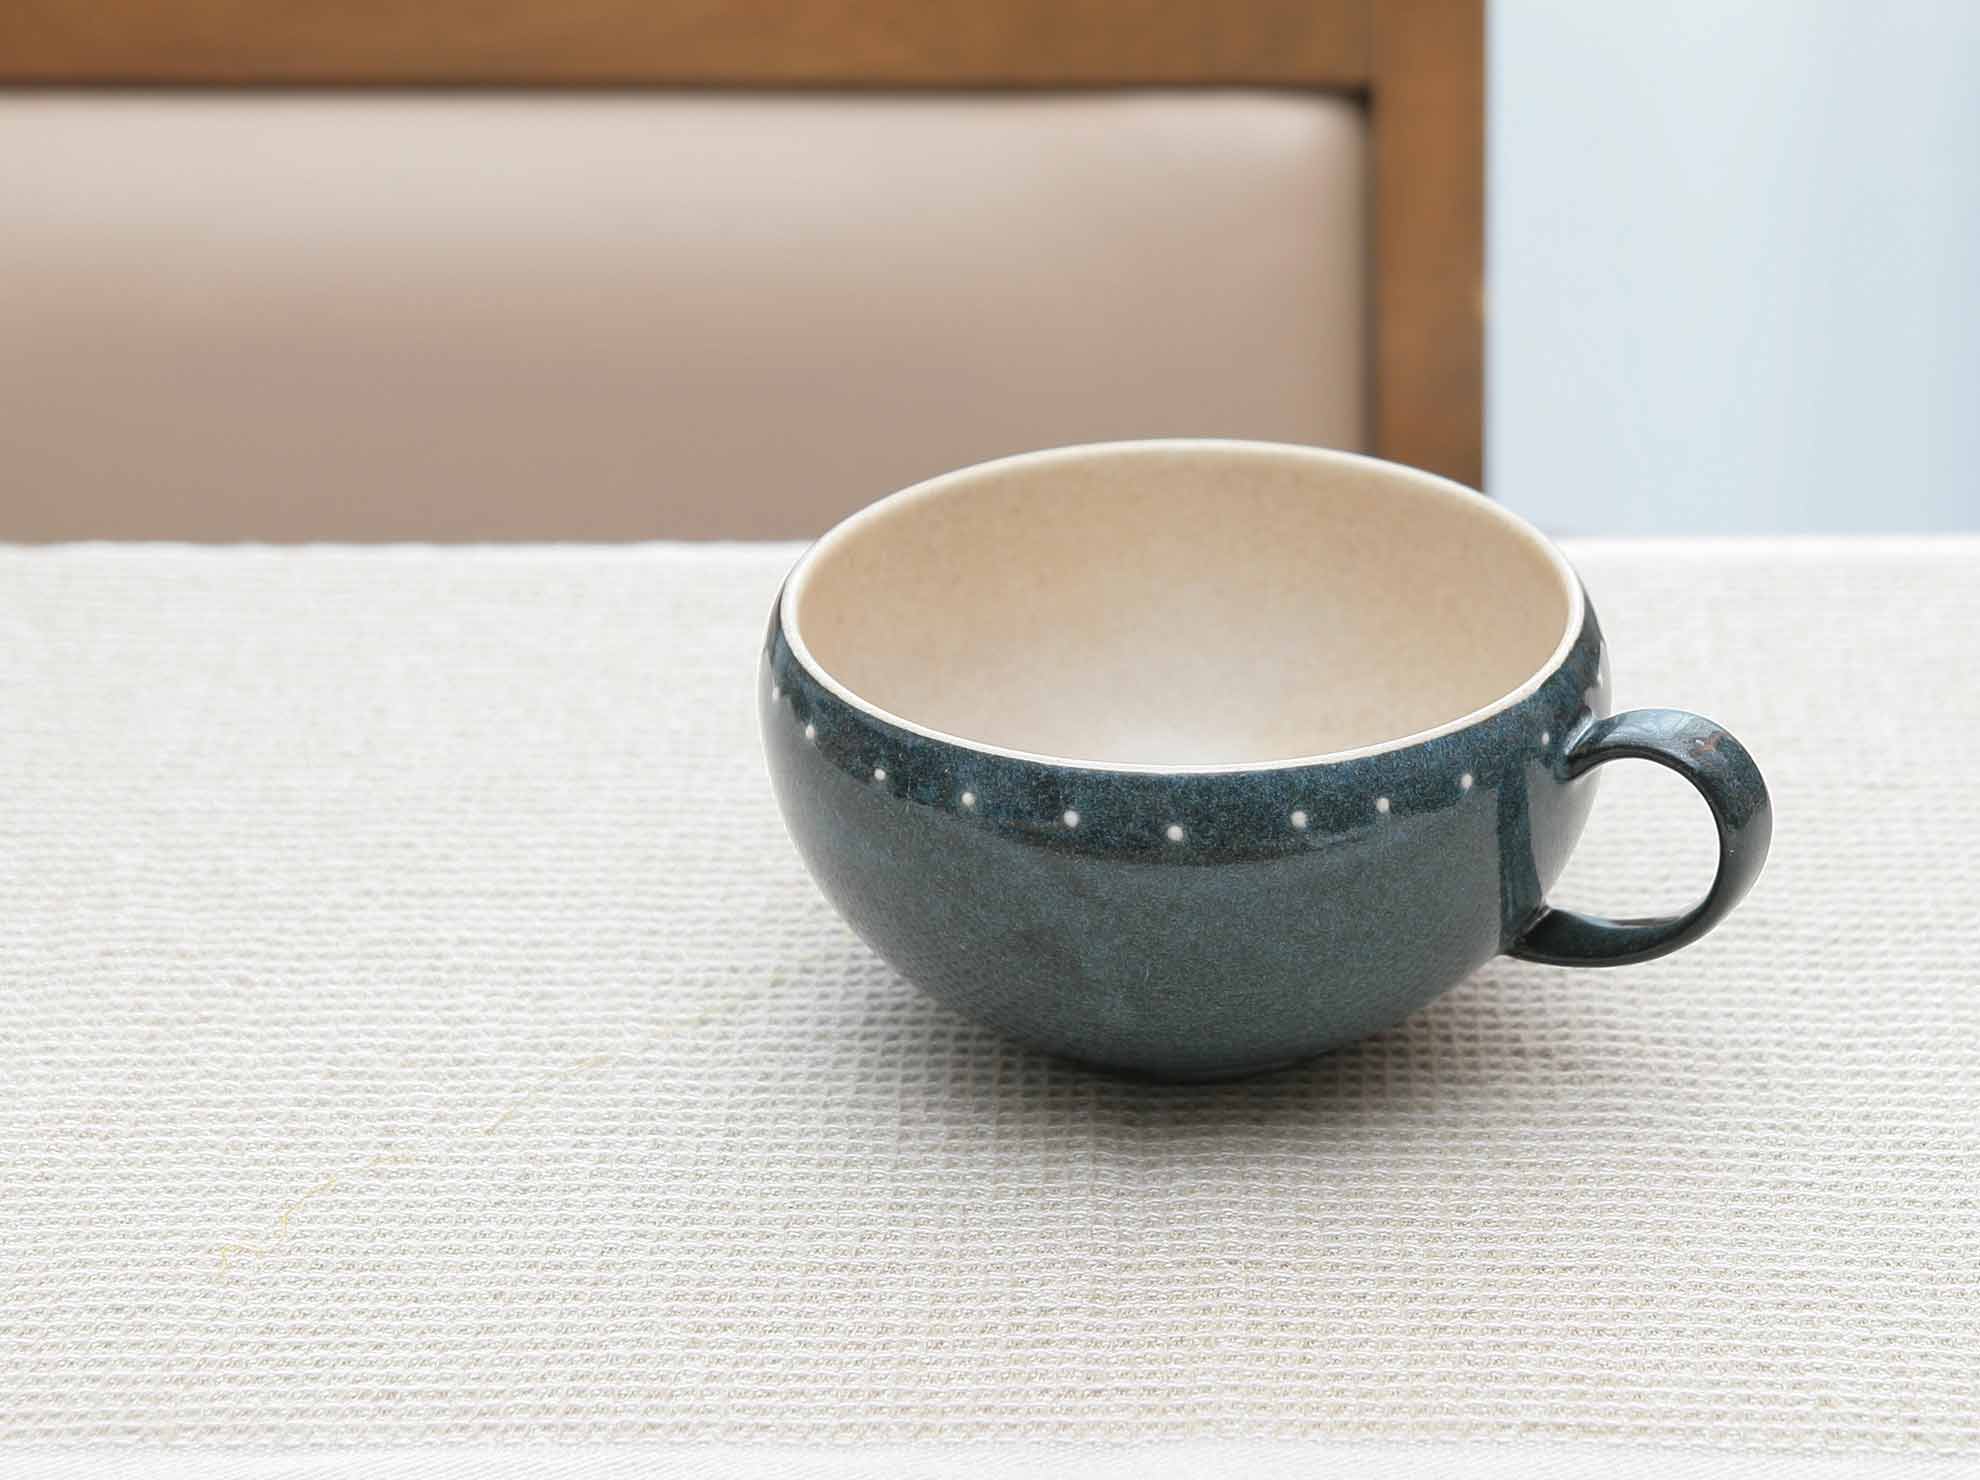 20165 ドットライン スープボウル ブルー 光陽陶器 かわいい おしゃれ おすすめ スープカップ